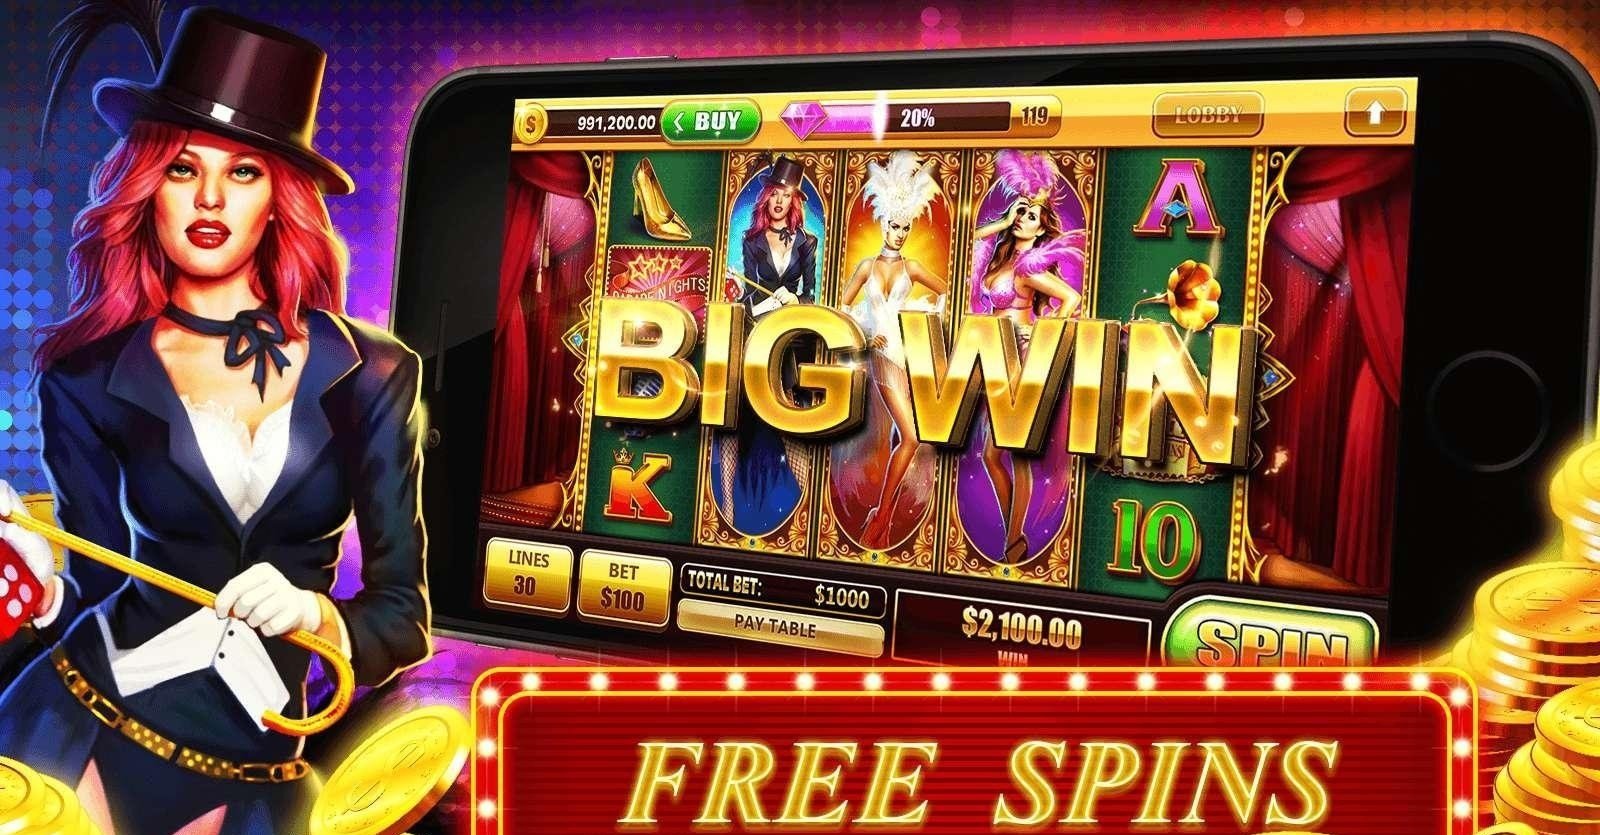 Демо игры казино вулкан автоматы бесплатно без регистрации игры онлайн бесплатно казино автоматы играть